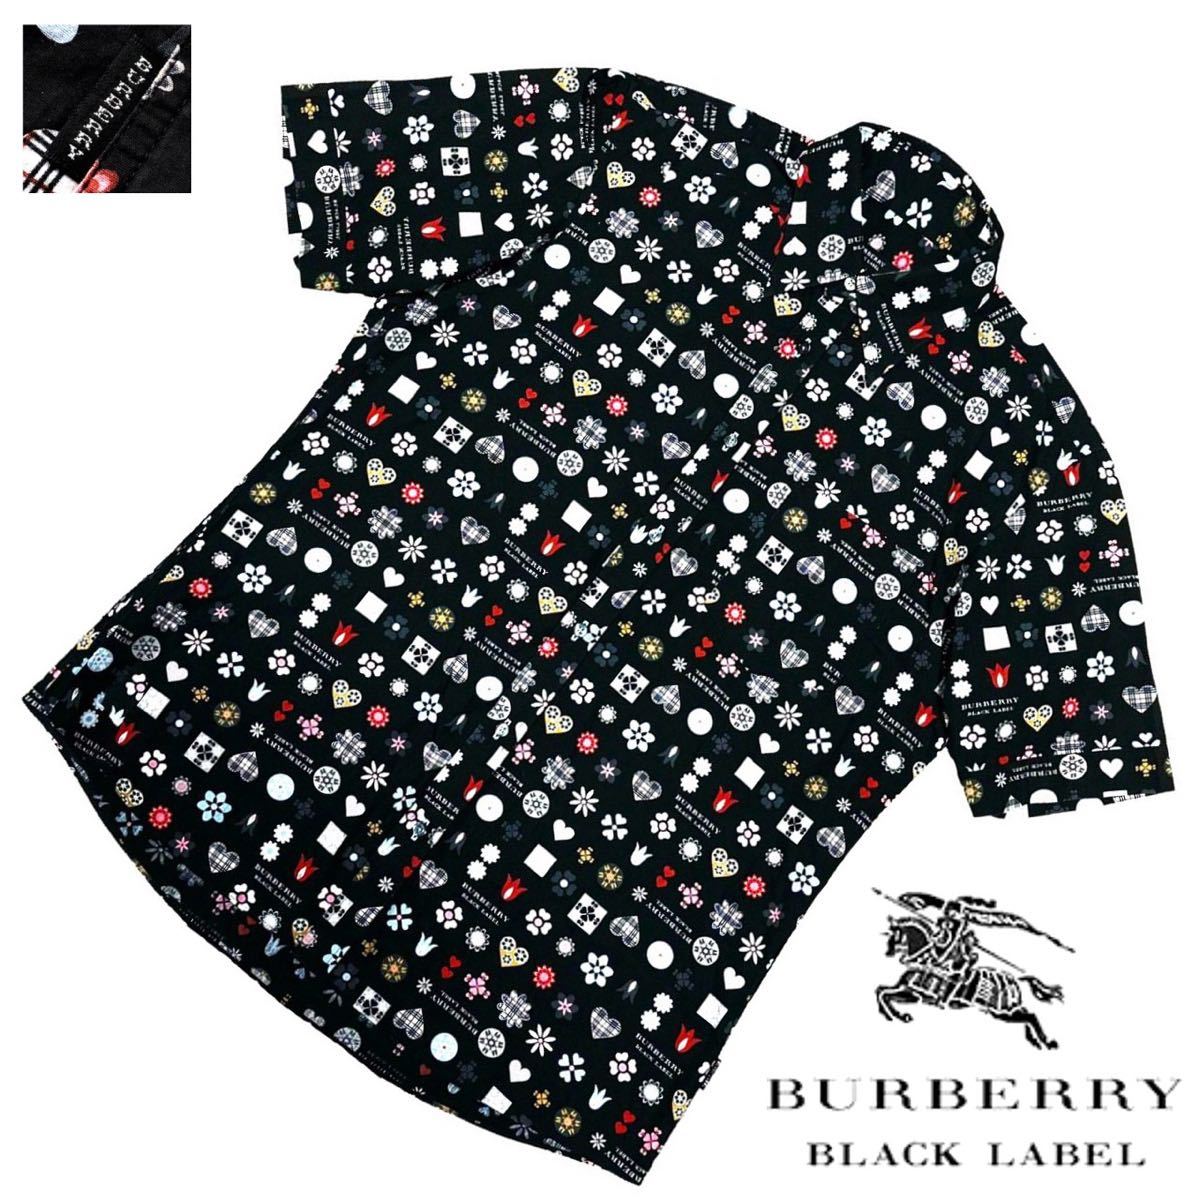 幻の逸品! 超希少 美品 日本製 名作 バーバリーブラックレーベル マルチモノグラム 総柄 半袖 ドレス シャツ 3/L 黒 BURBERRY BLACK LABEL